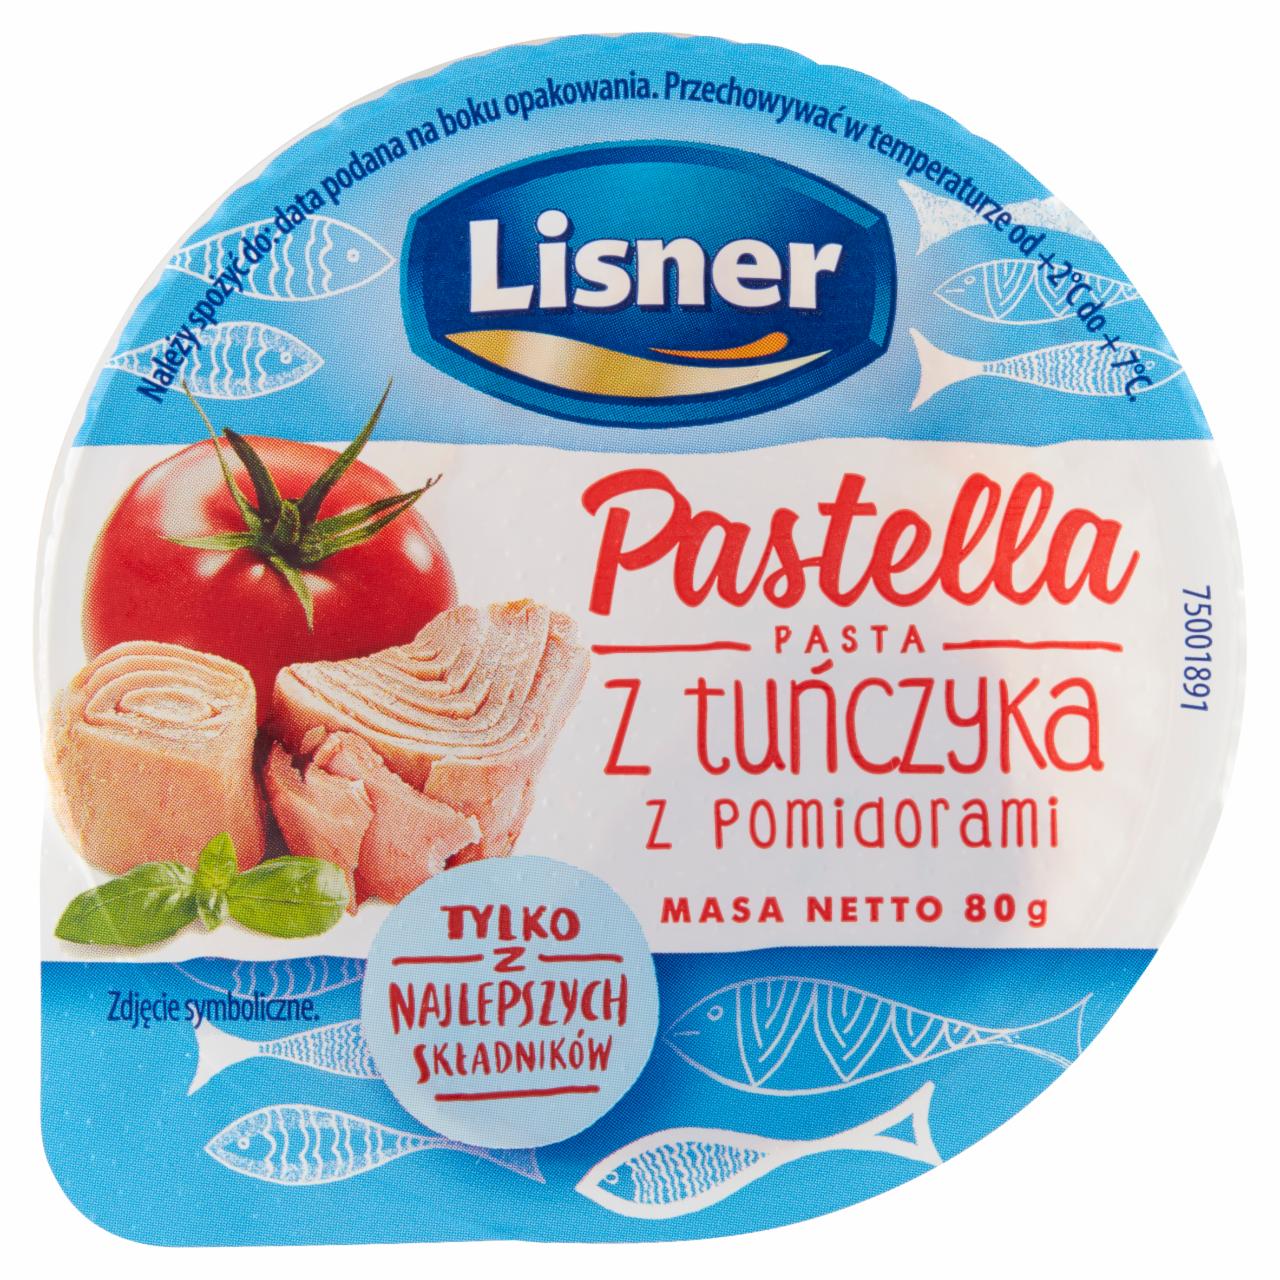 Zdjęcia - Lisner Pastella Pasta z tuńczyka z pomidorami 80 g